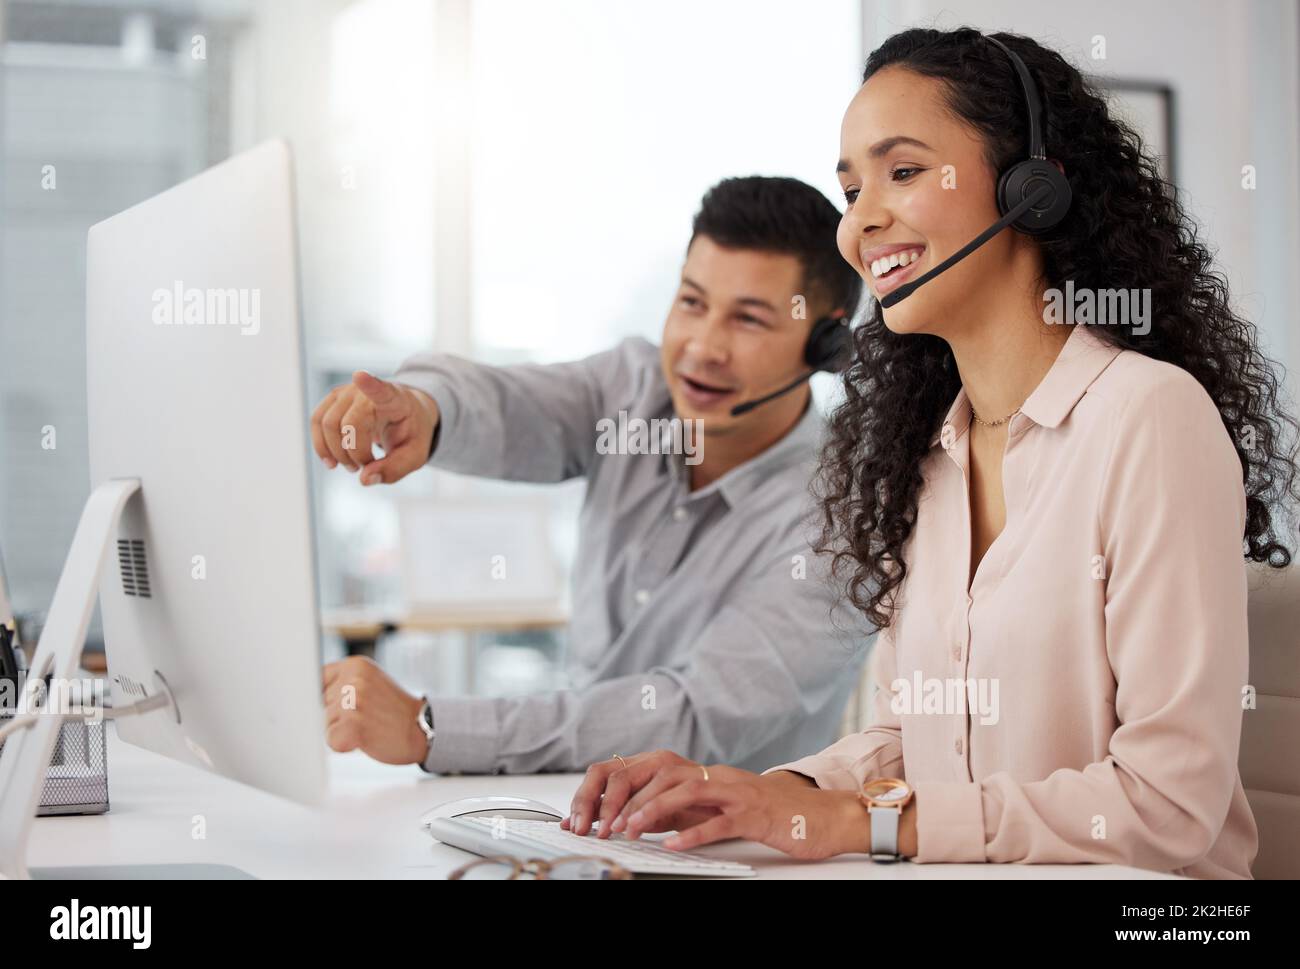 Austausch von Ratschlägen zur Verbesserung ihrer Dienste. Aufnahme von zwei Call Center-Agenten, die an einem Computer in einem Büro zusammenarbeiten. Stockfoto